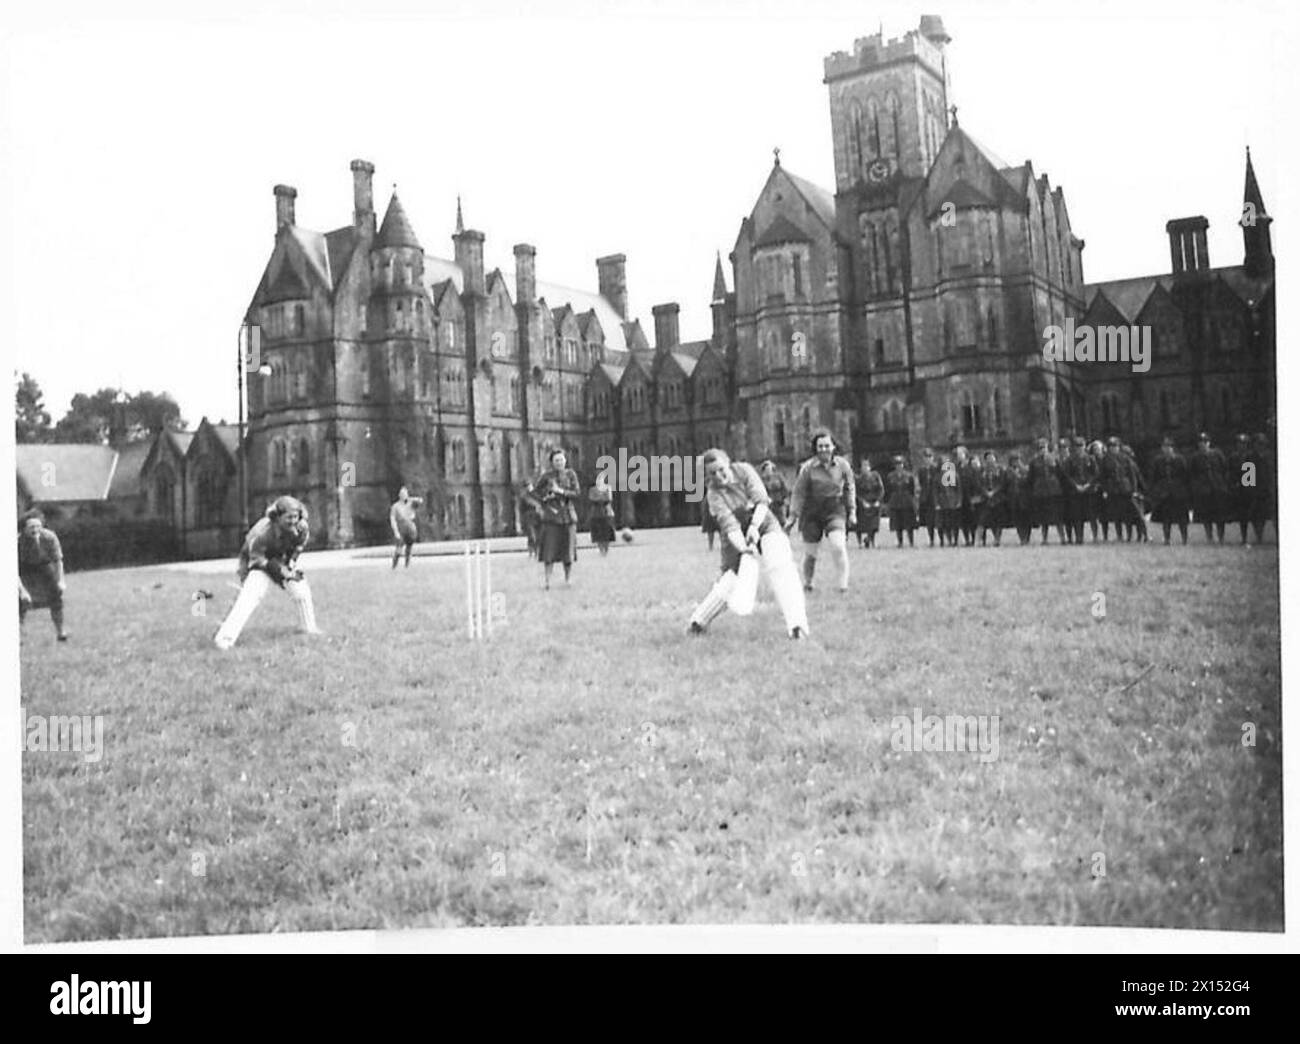 Ein TAG MIT DEN A.T.S. IM TRAINING - Netball und Cricket werden bei den Spielen der British Army gespielt Stockfoto